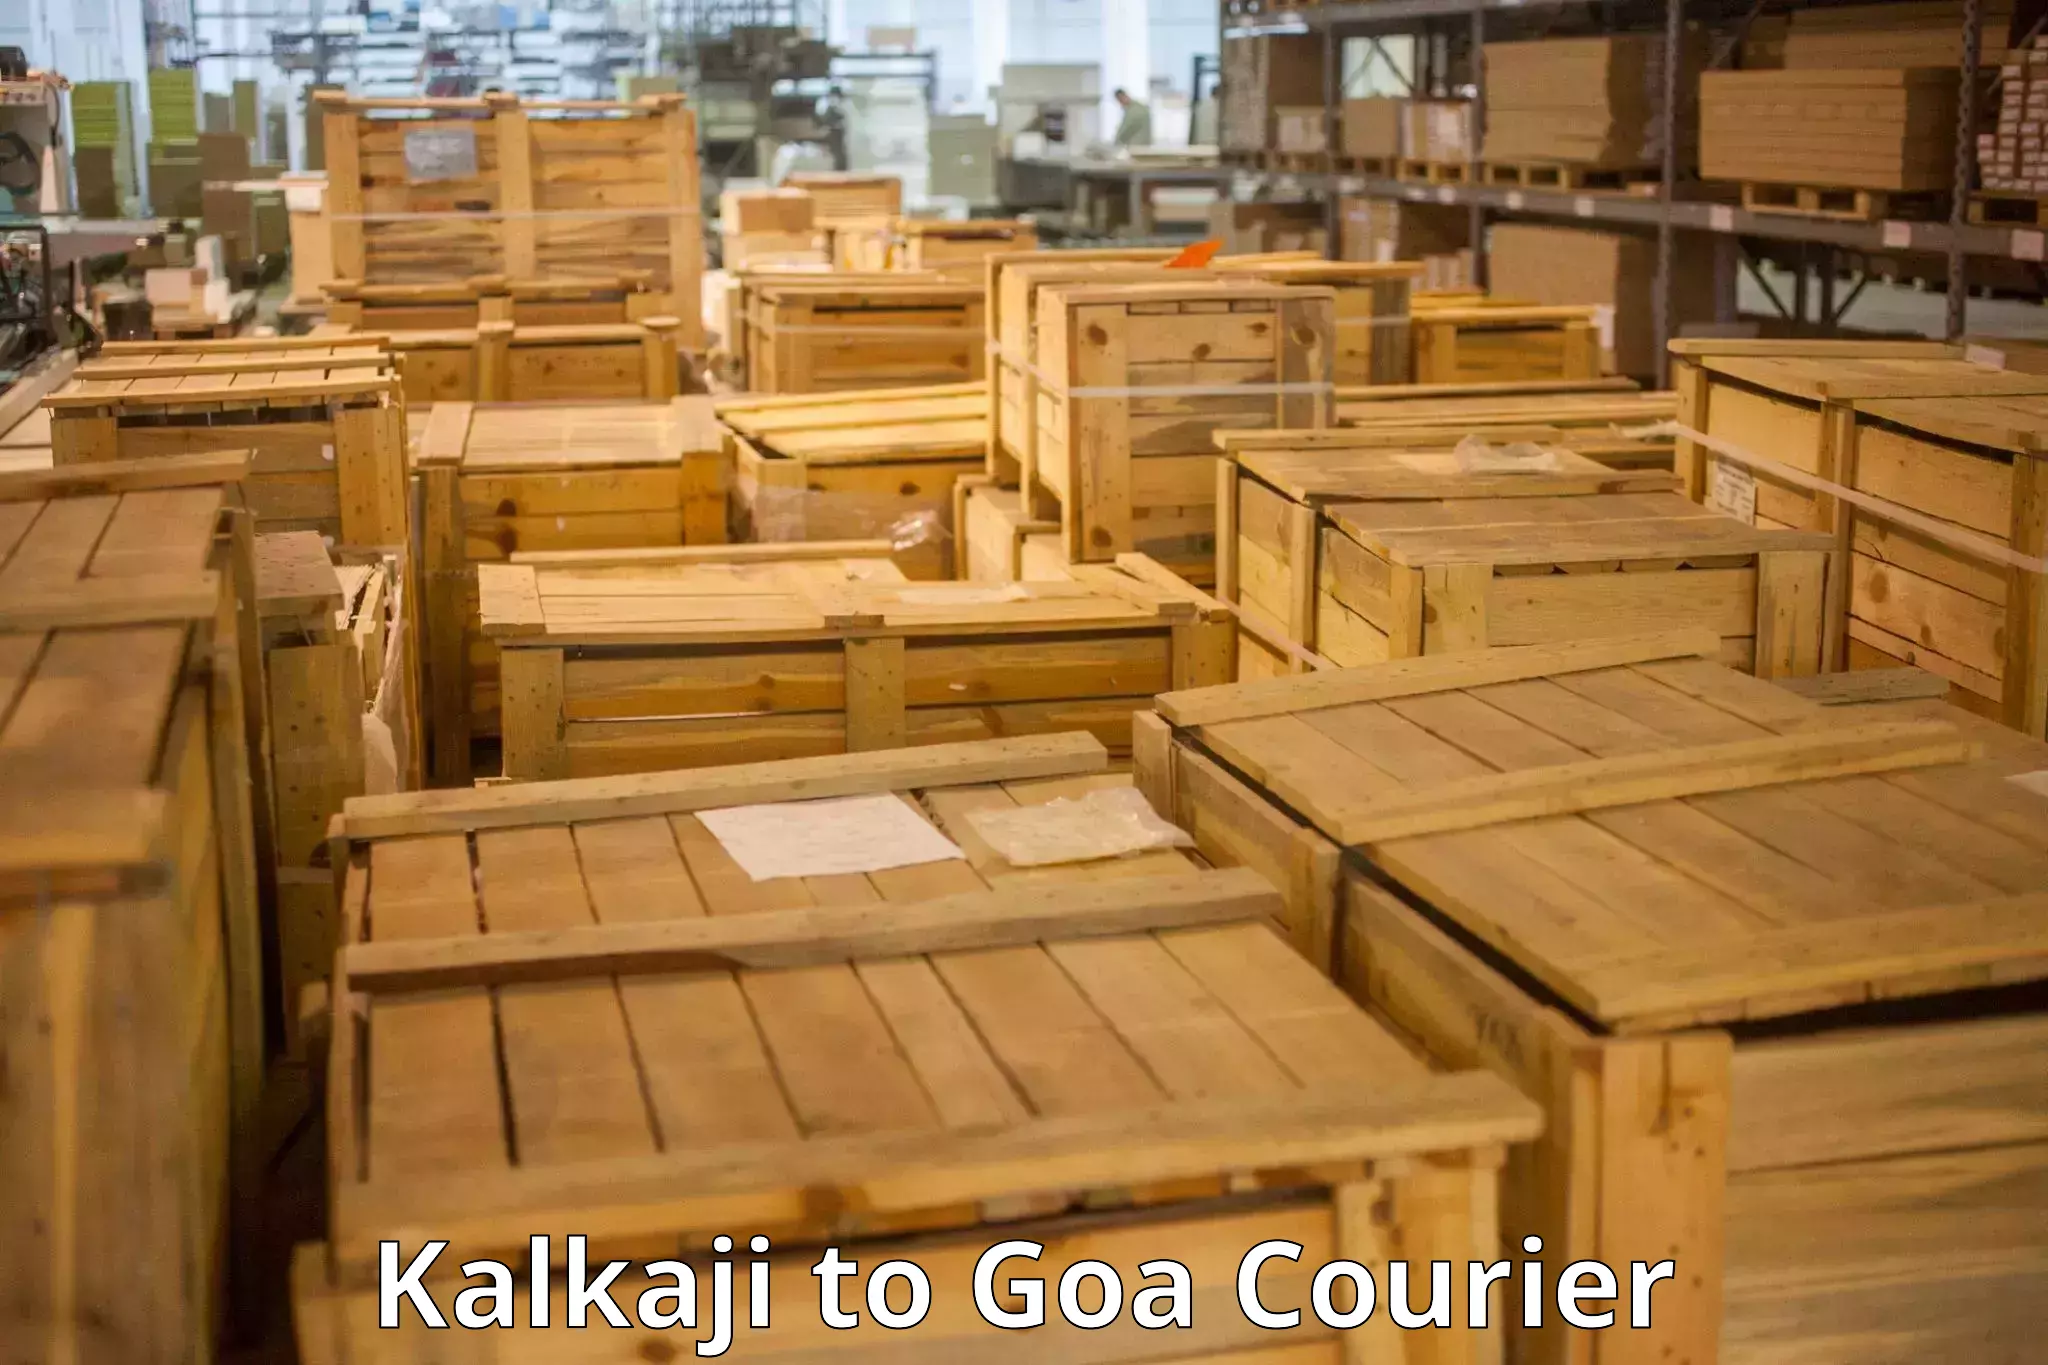 Luggage delivery app Kalkaji to Goa